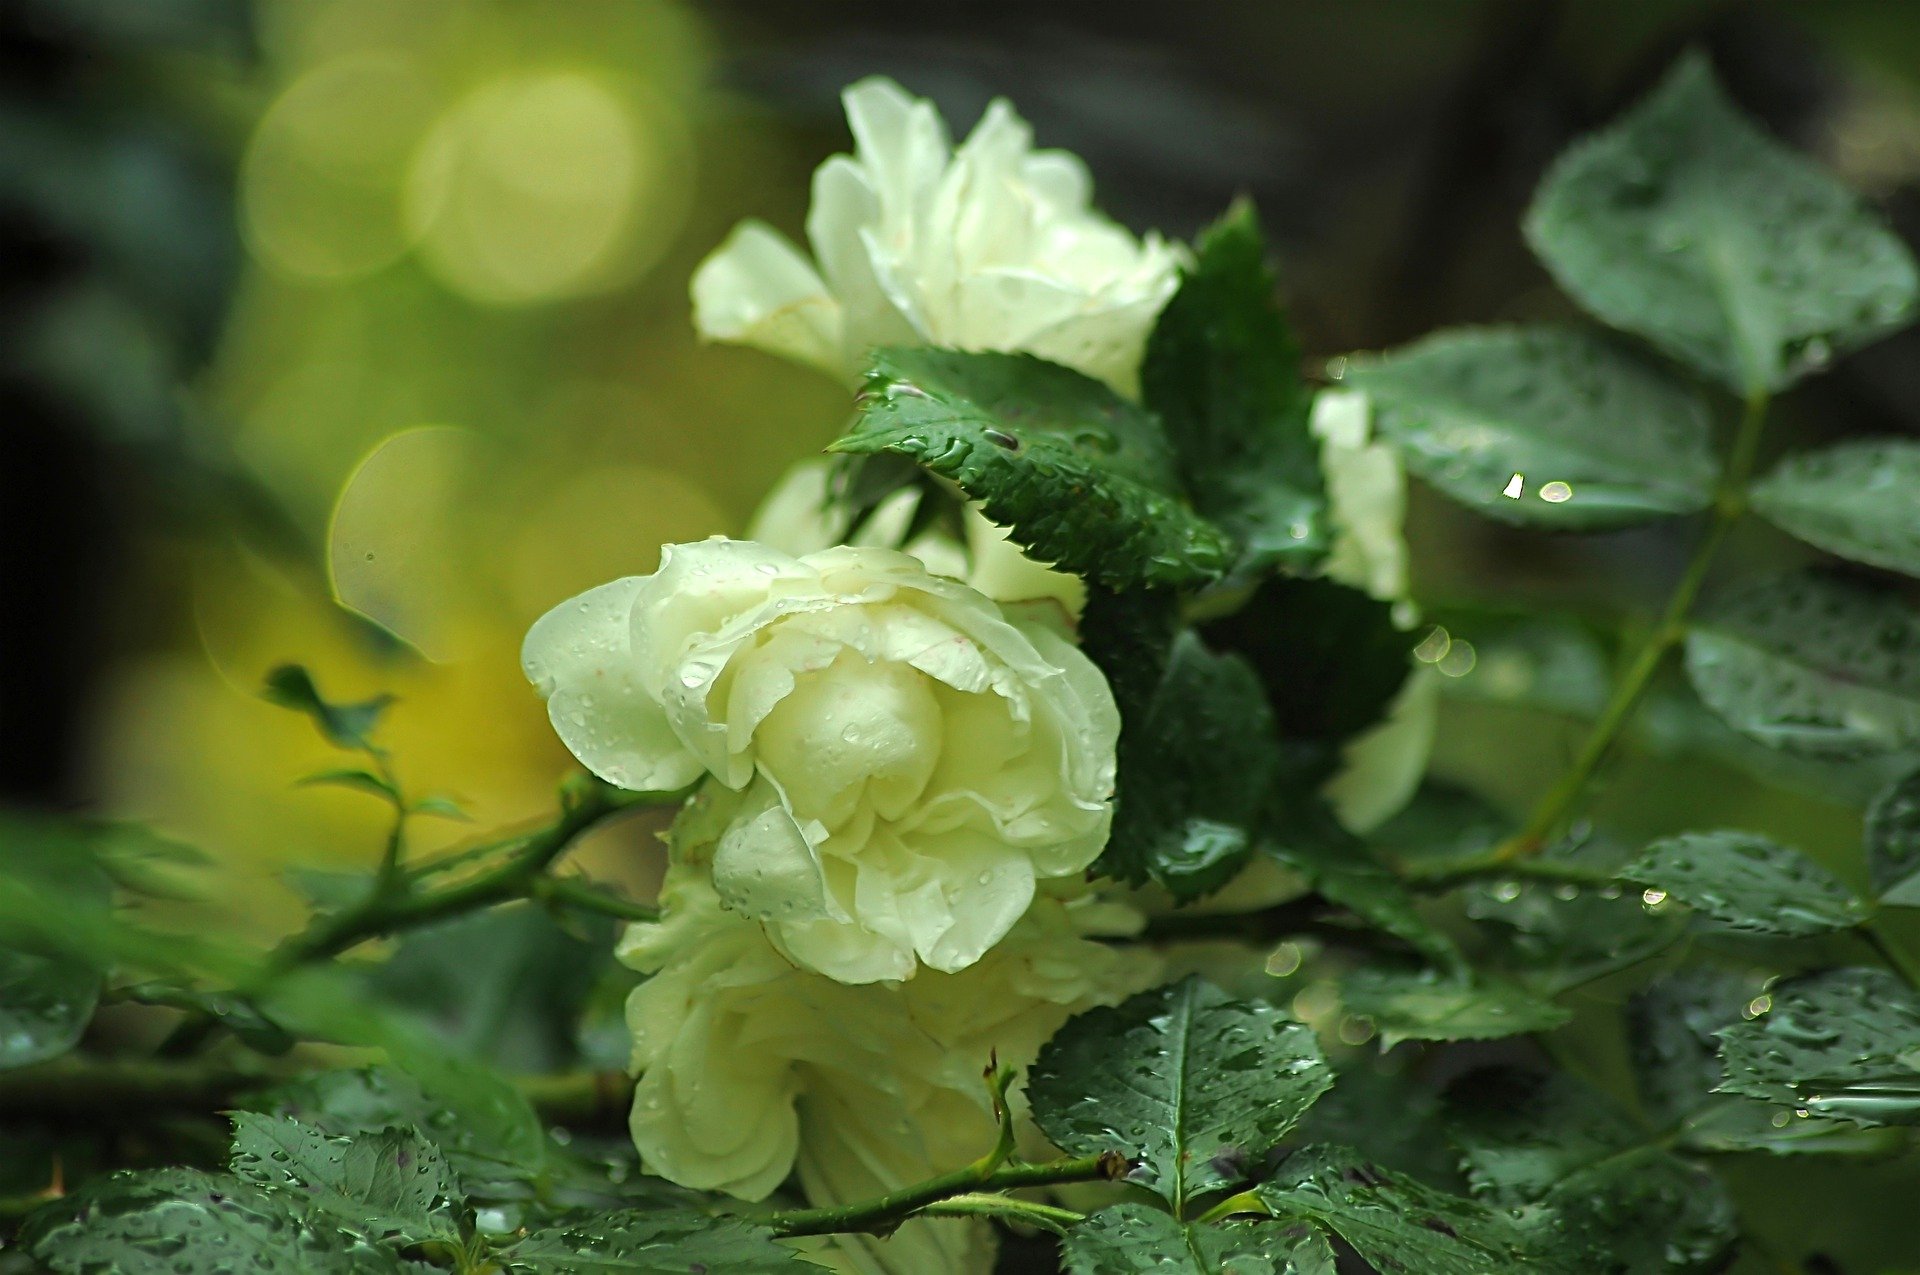 Красивые белые розы на природе - 40 фото